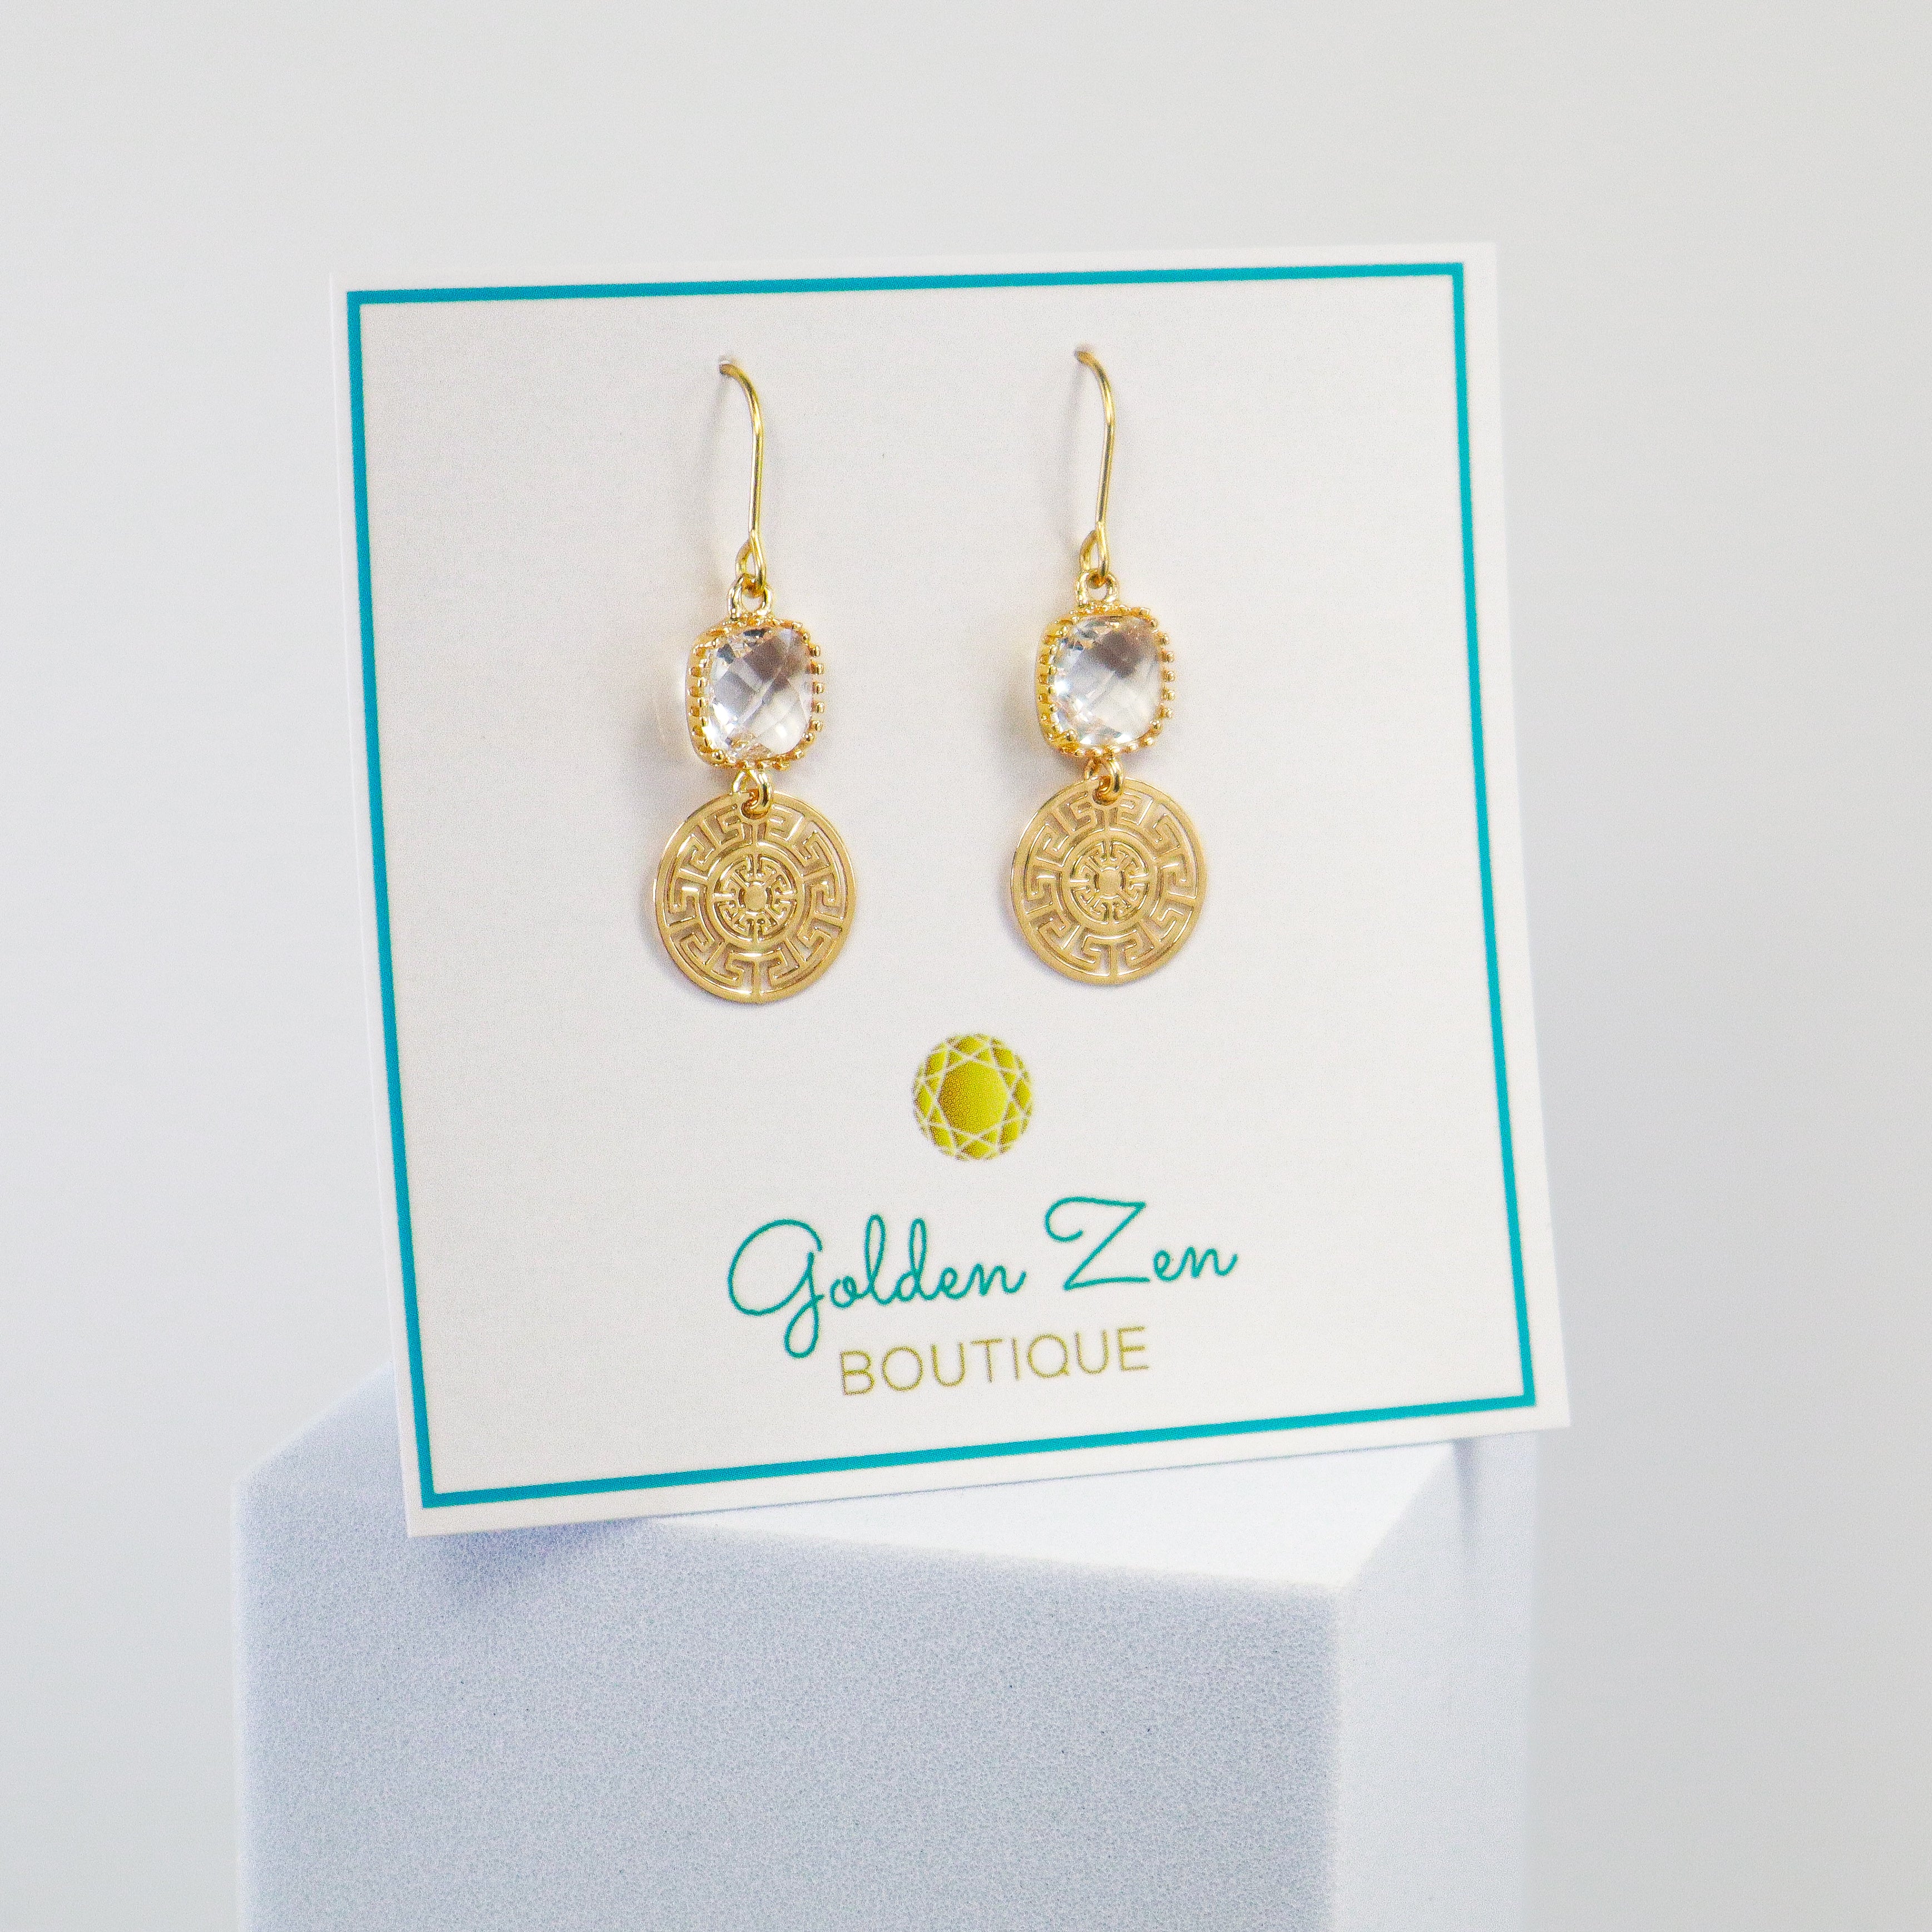 Golden Zen Exclusive Greek Key Diamond Crystal Earrings